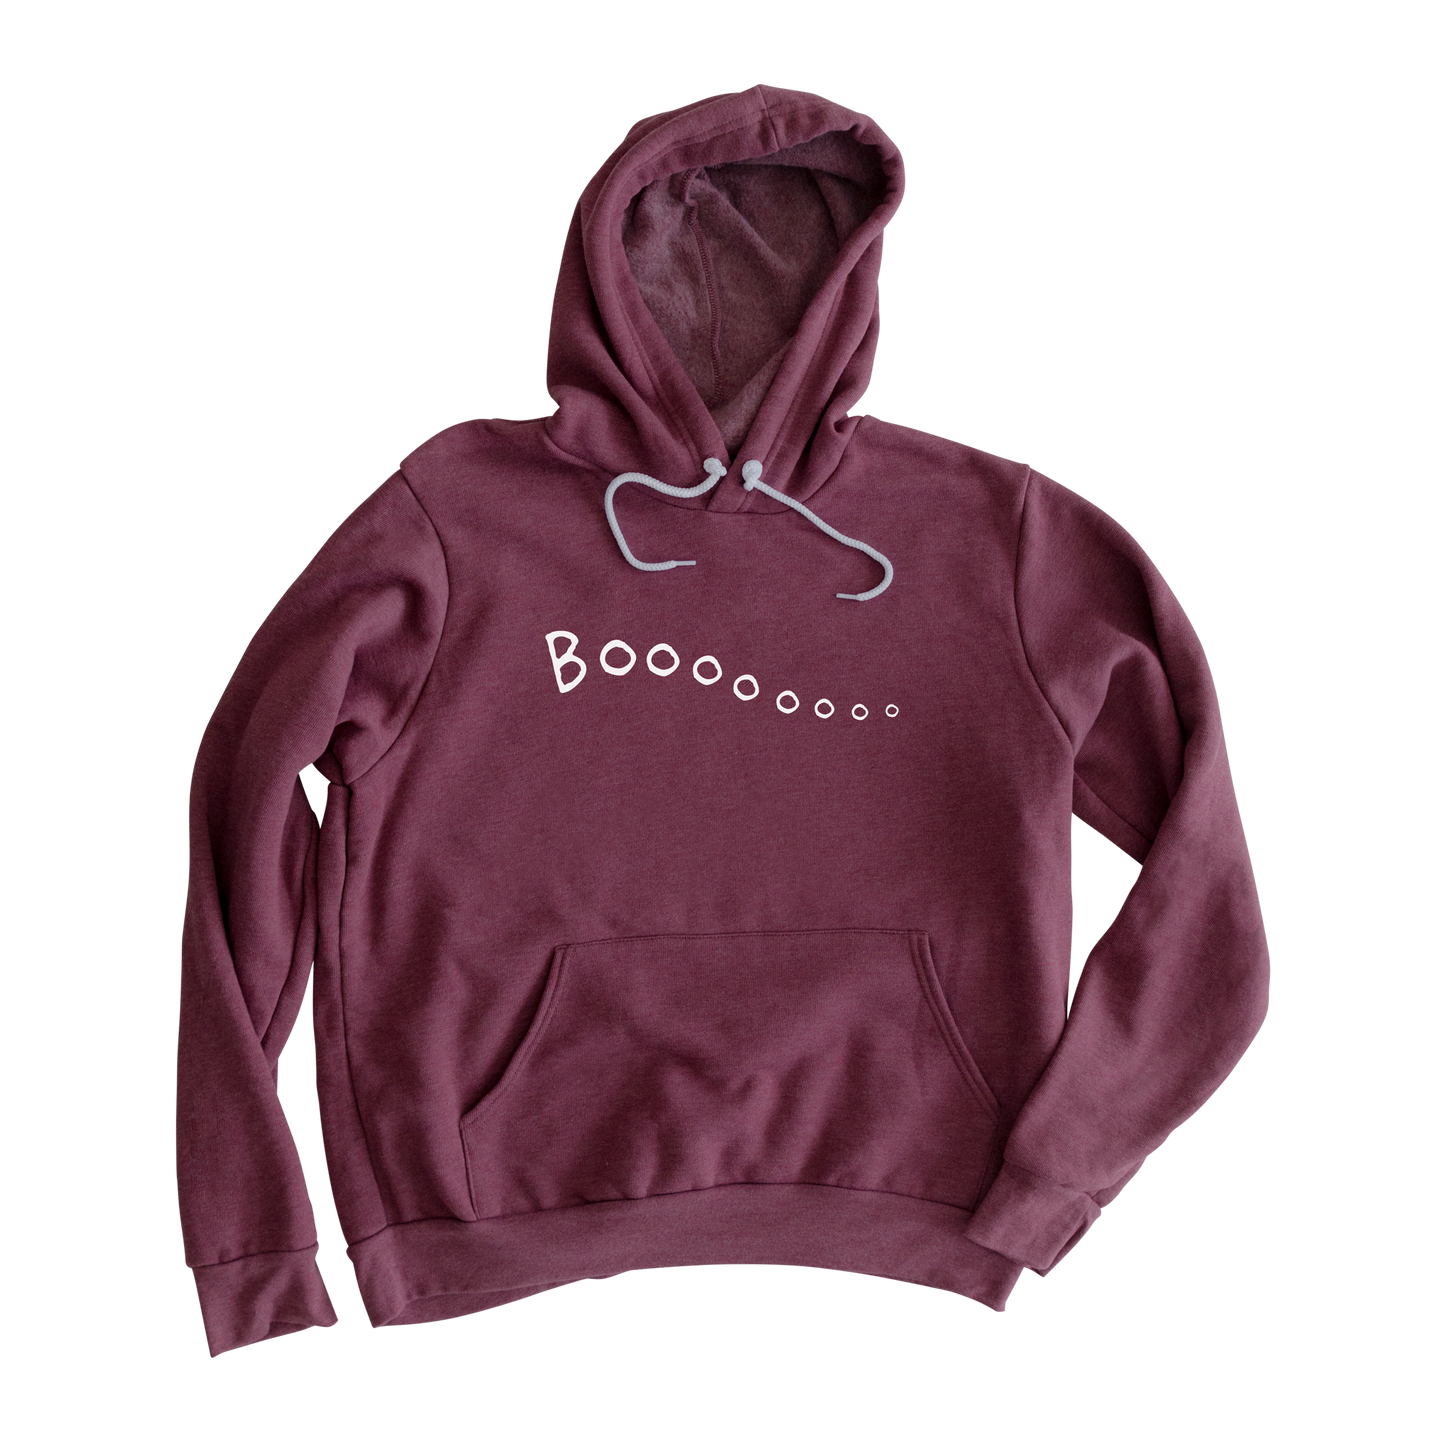 Boooo Hooded Sweatshirt (Glow-in-the-Dark!)